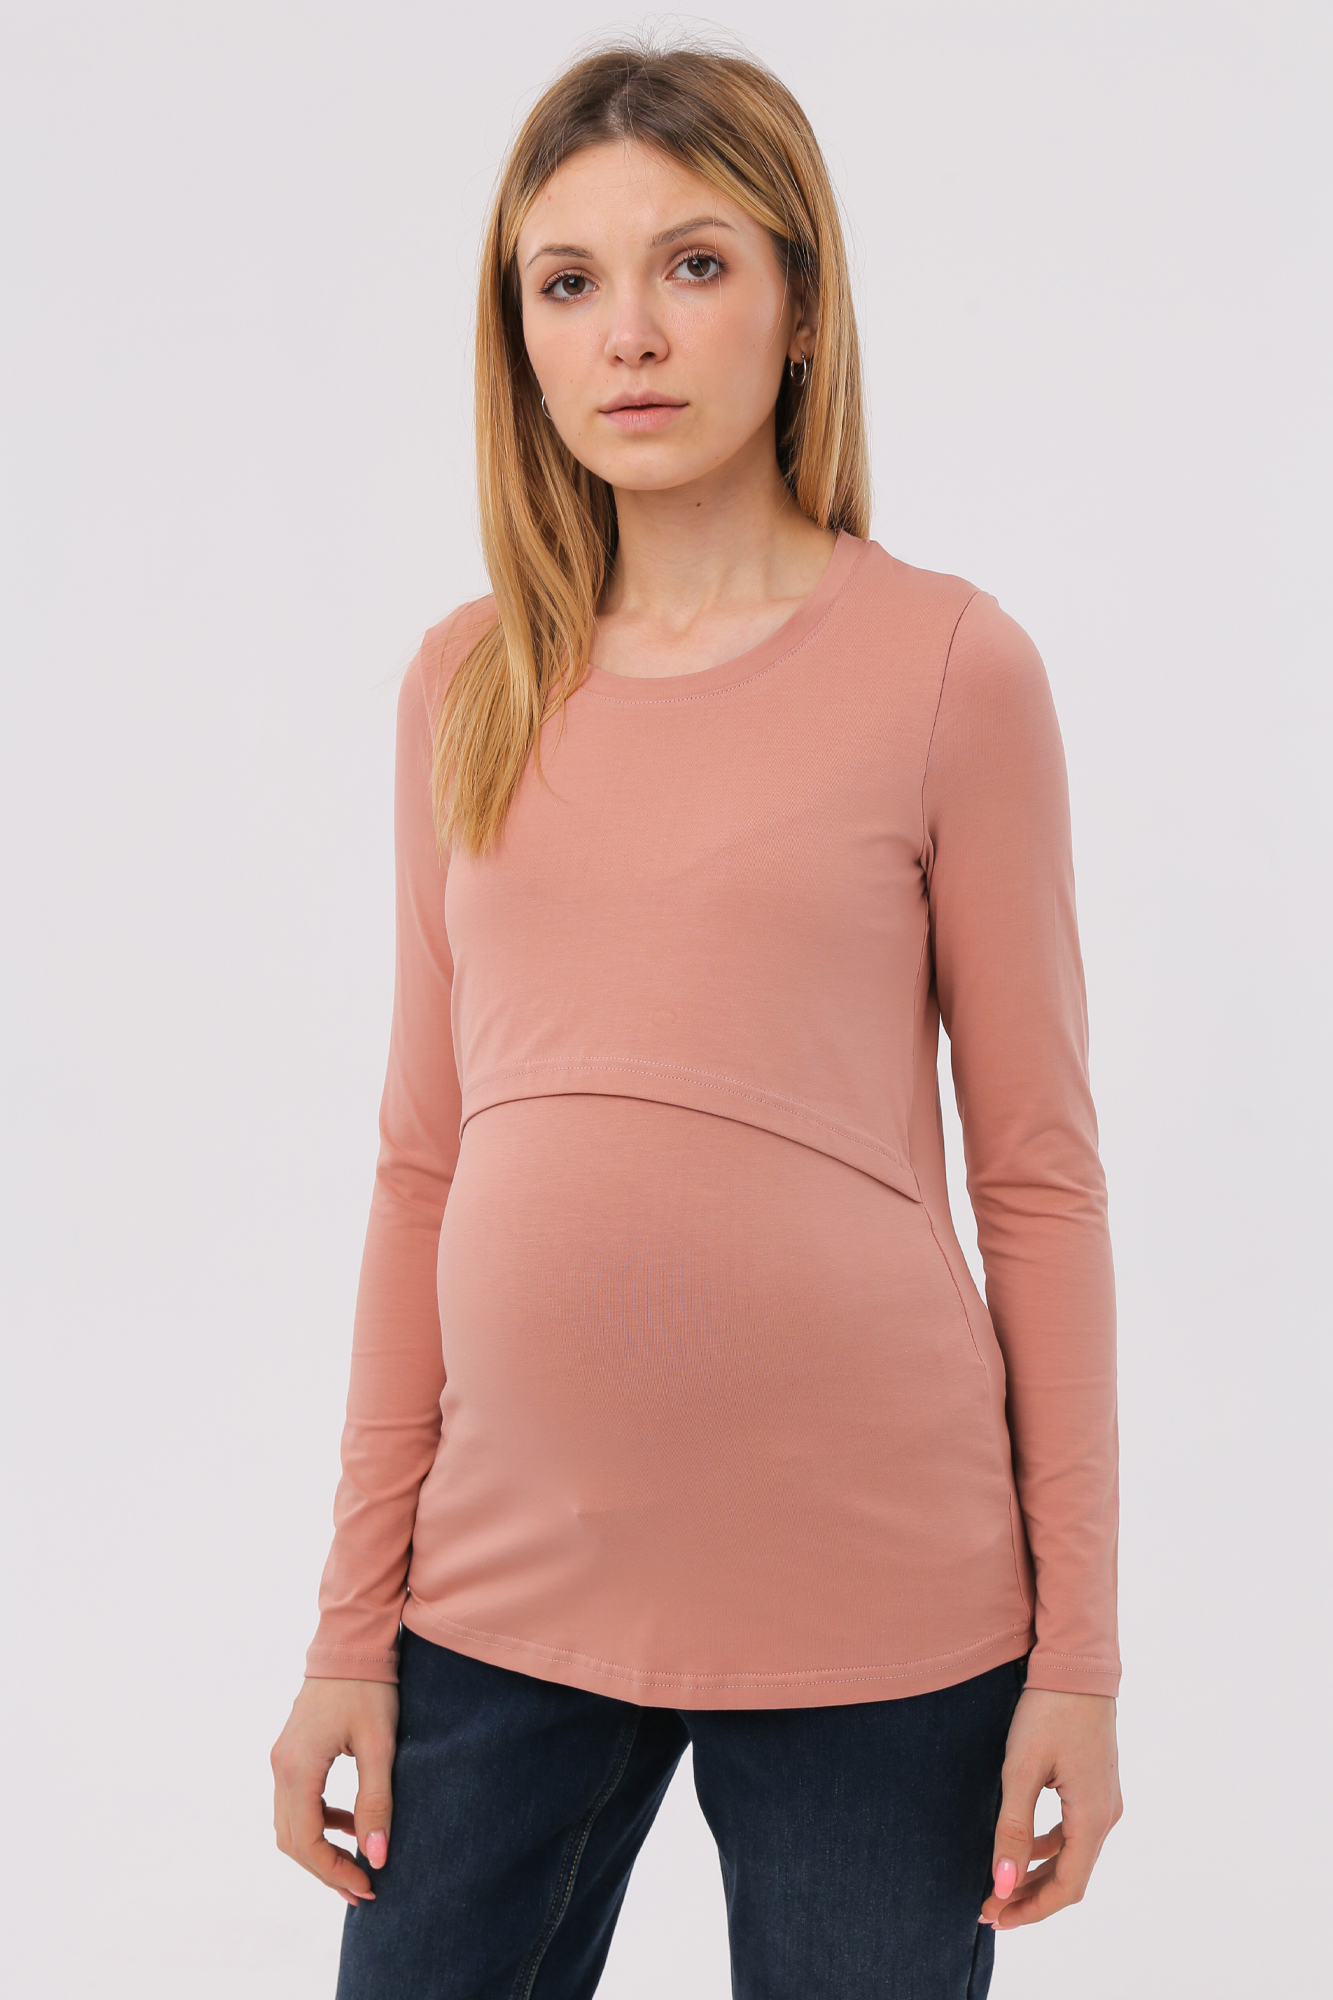 Лонгслив для беременных женский Magica bellezza МВ7038 розовый 42 RU